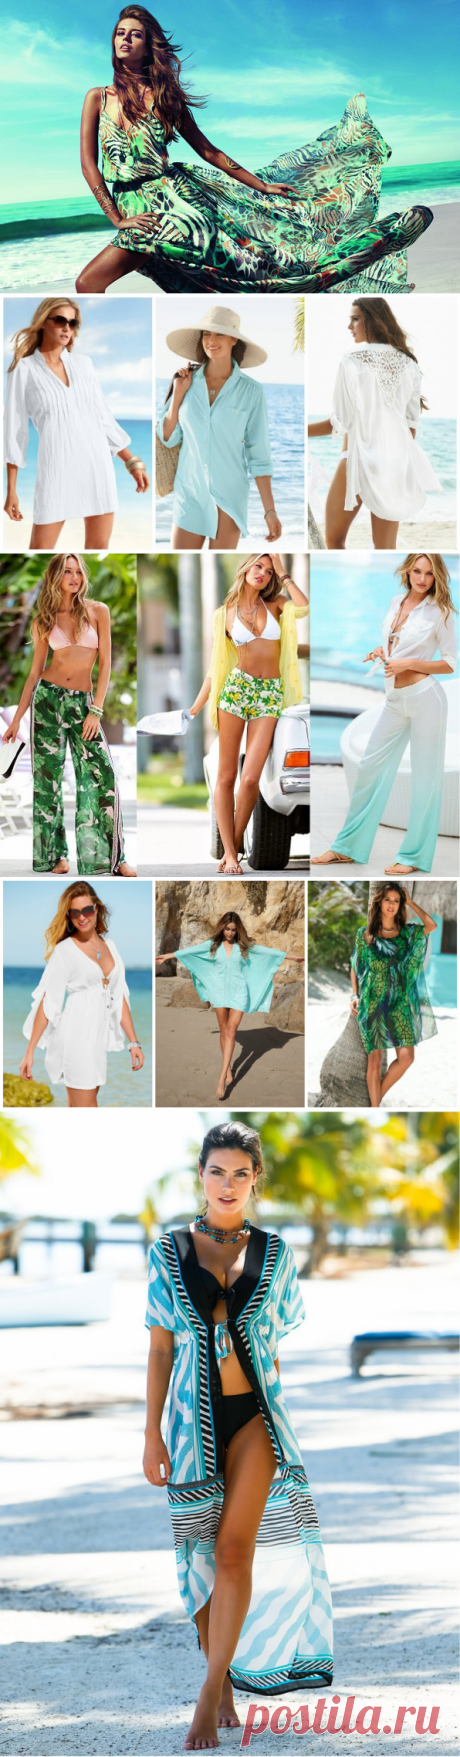 Пляжные платья. Что модно надевать на пляж в 2016 году и где купить недорого?